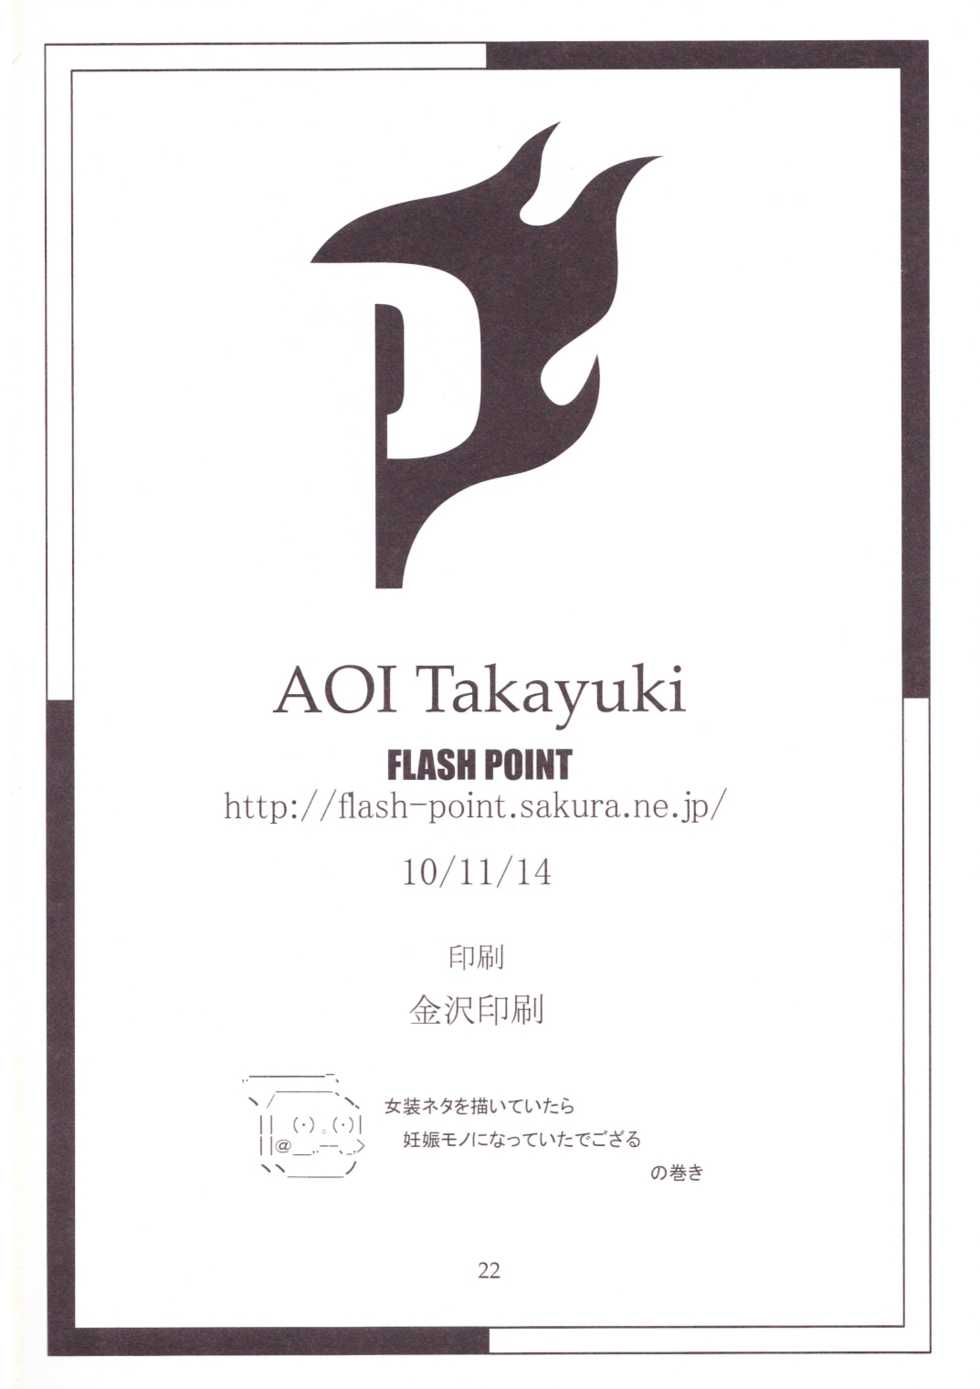 Aoi Takayuki